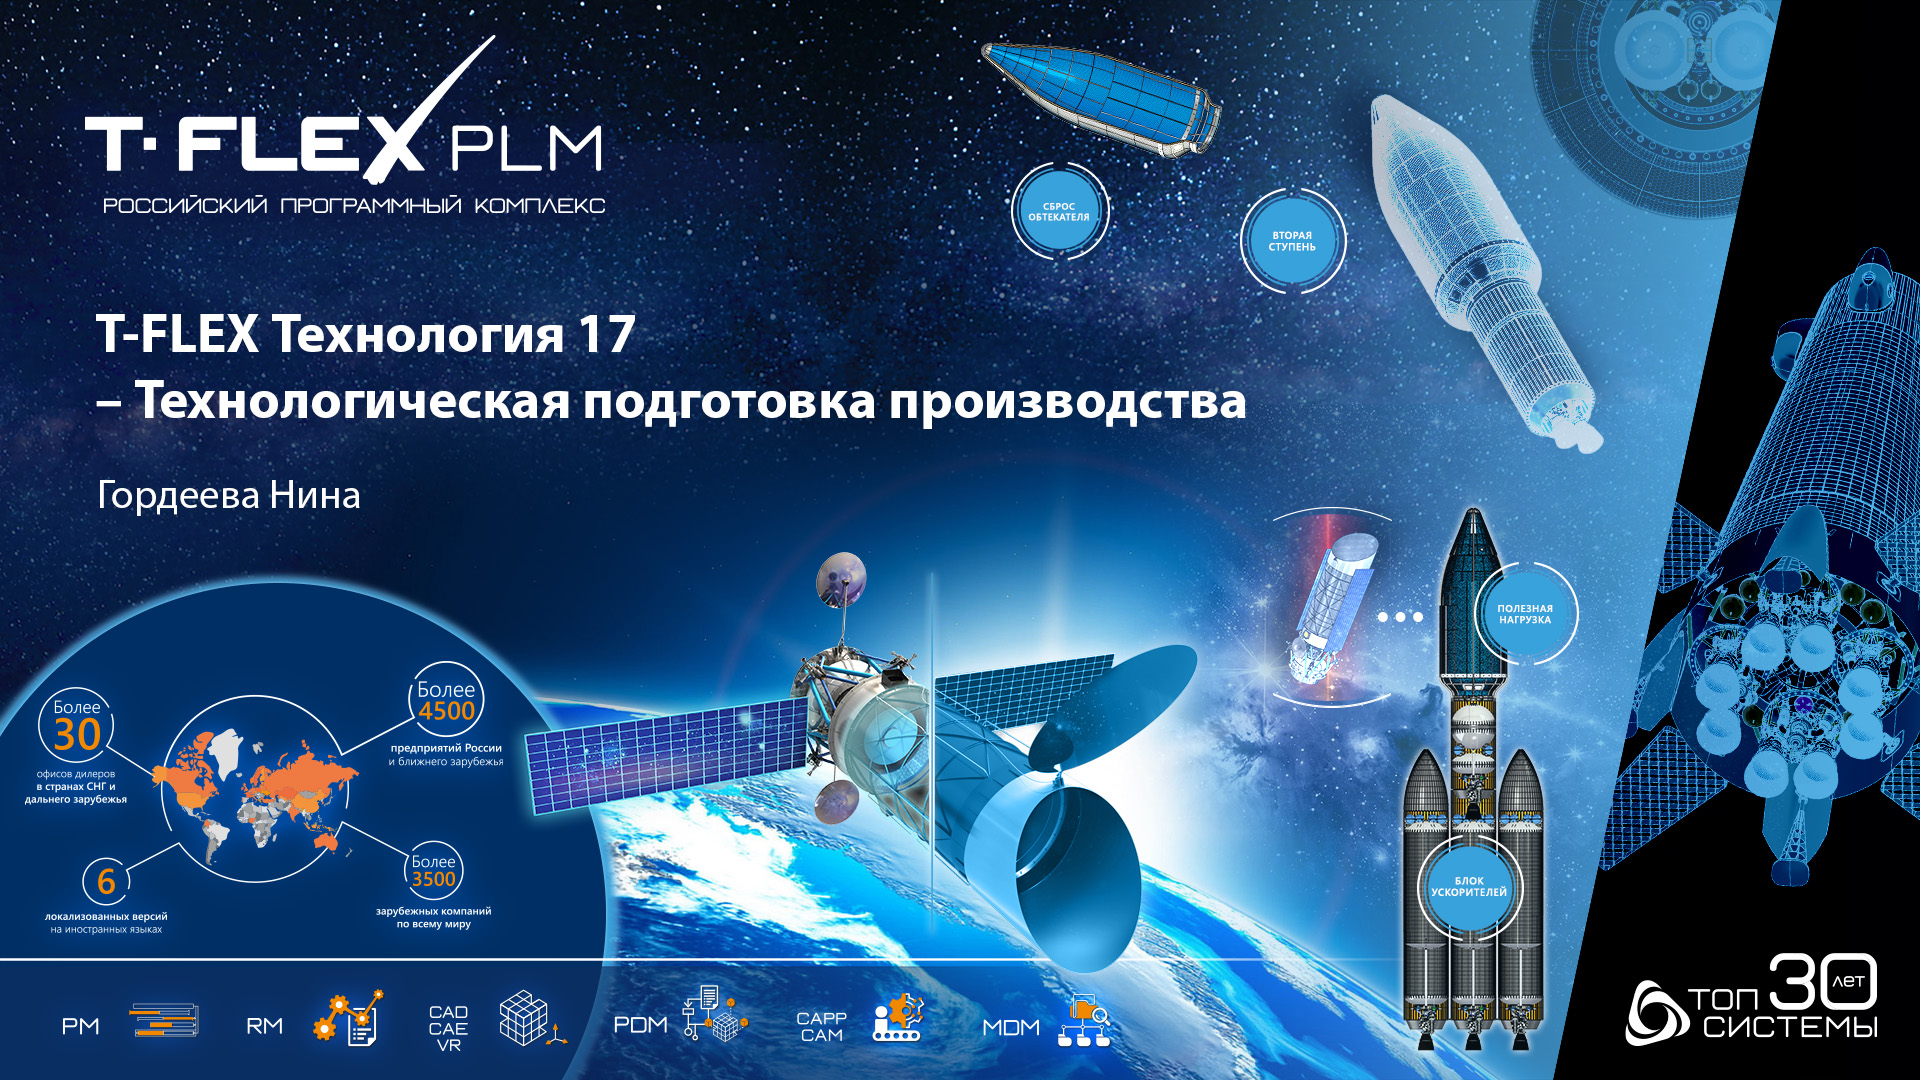 T-FLEX PLM 2022 - Технологическая подготовка производства